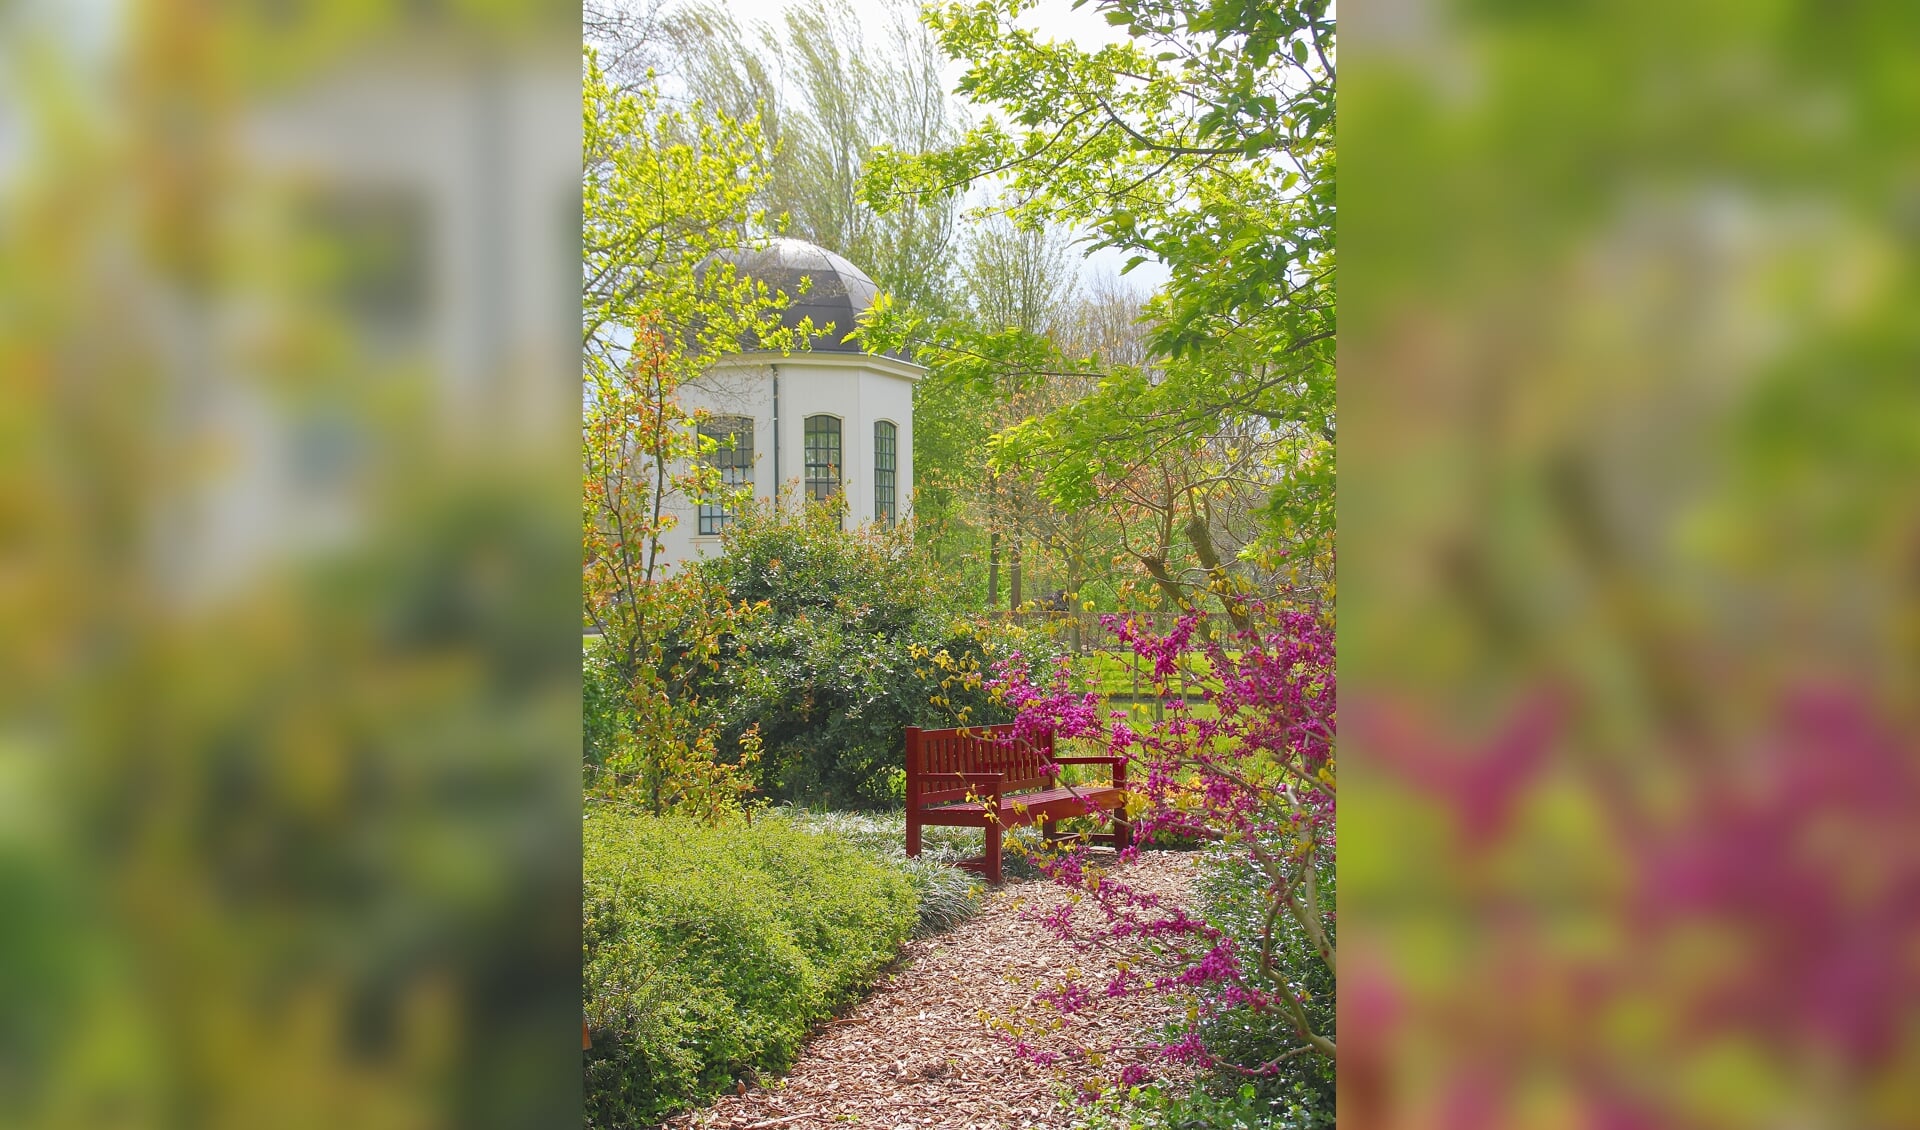 Bloeiend voorjaar in het Arboretum Oudenbosch met op de achtergrond de bekende theekoepel van de tuin. FOTO FRANK VAN ANDEL